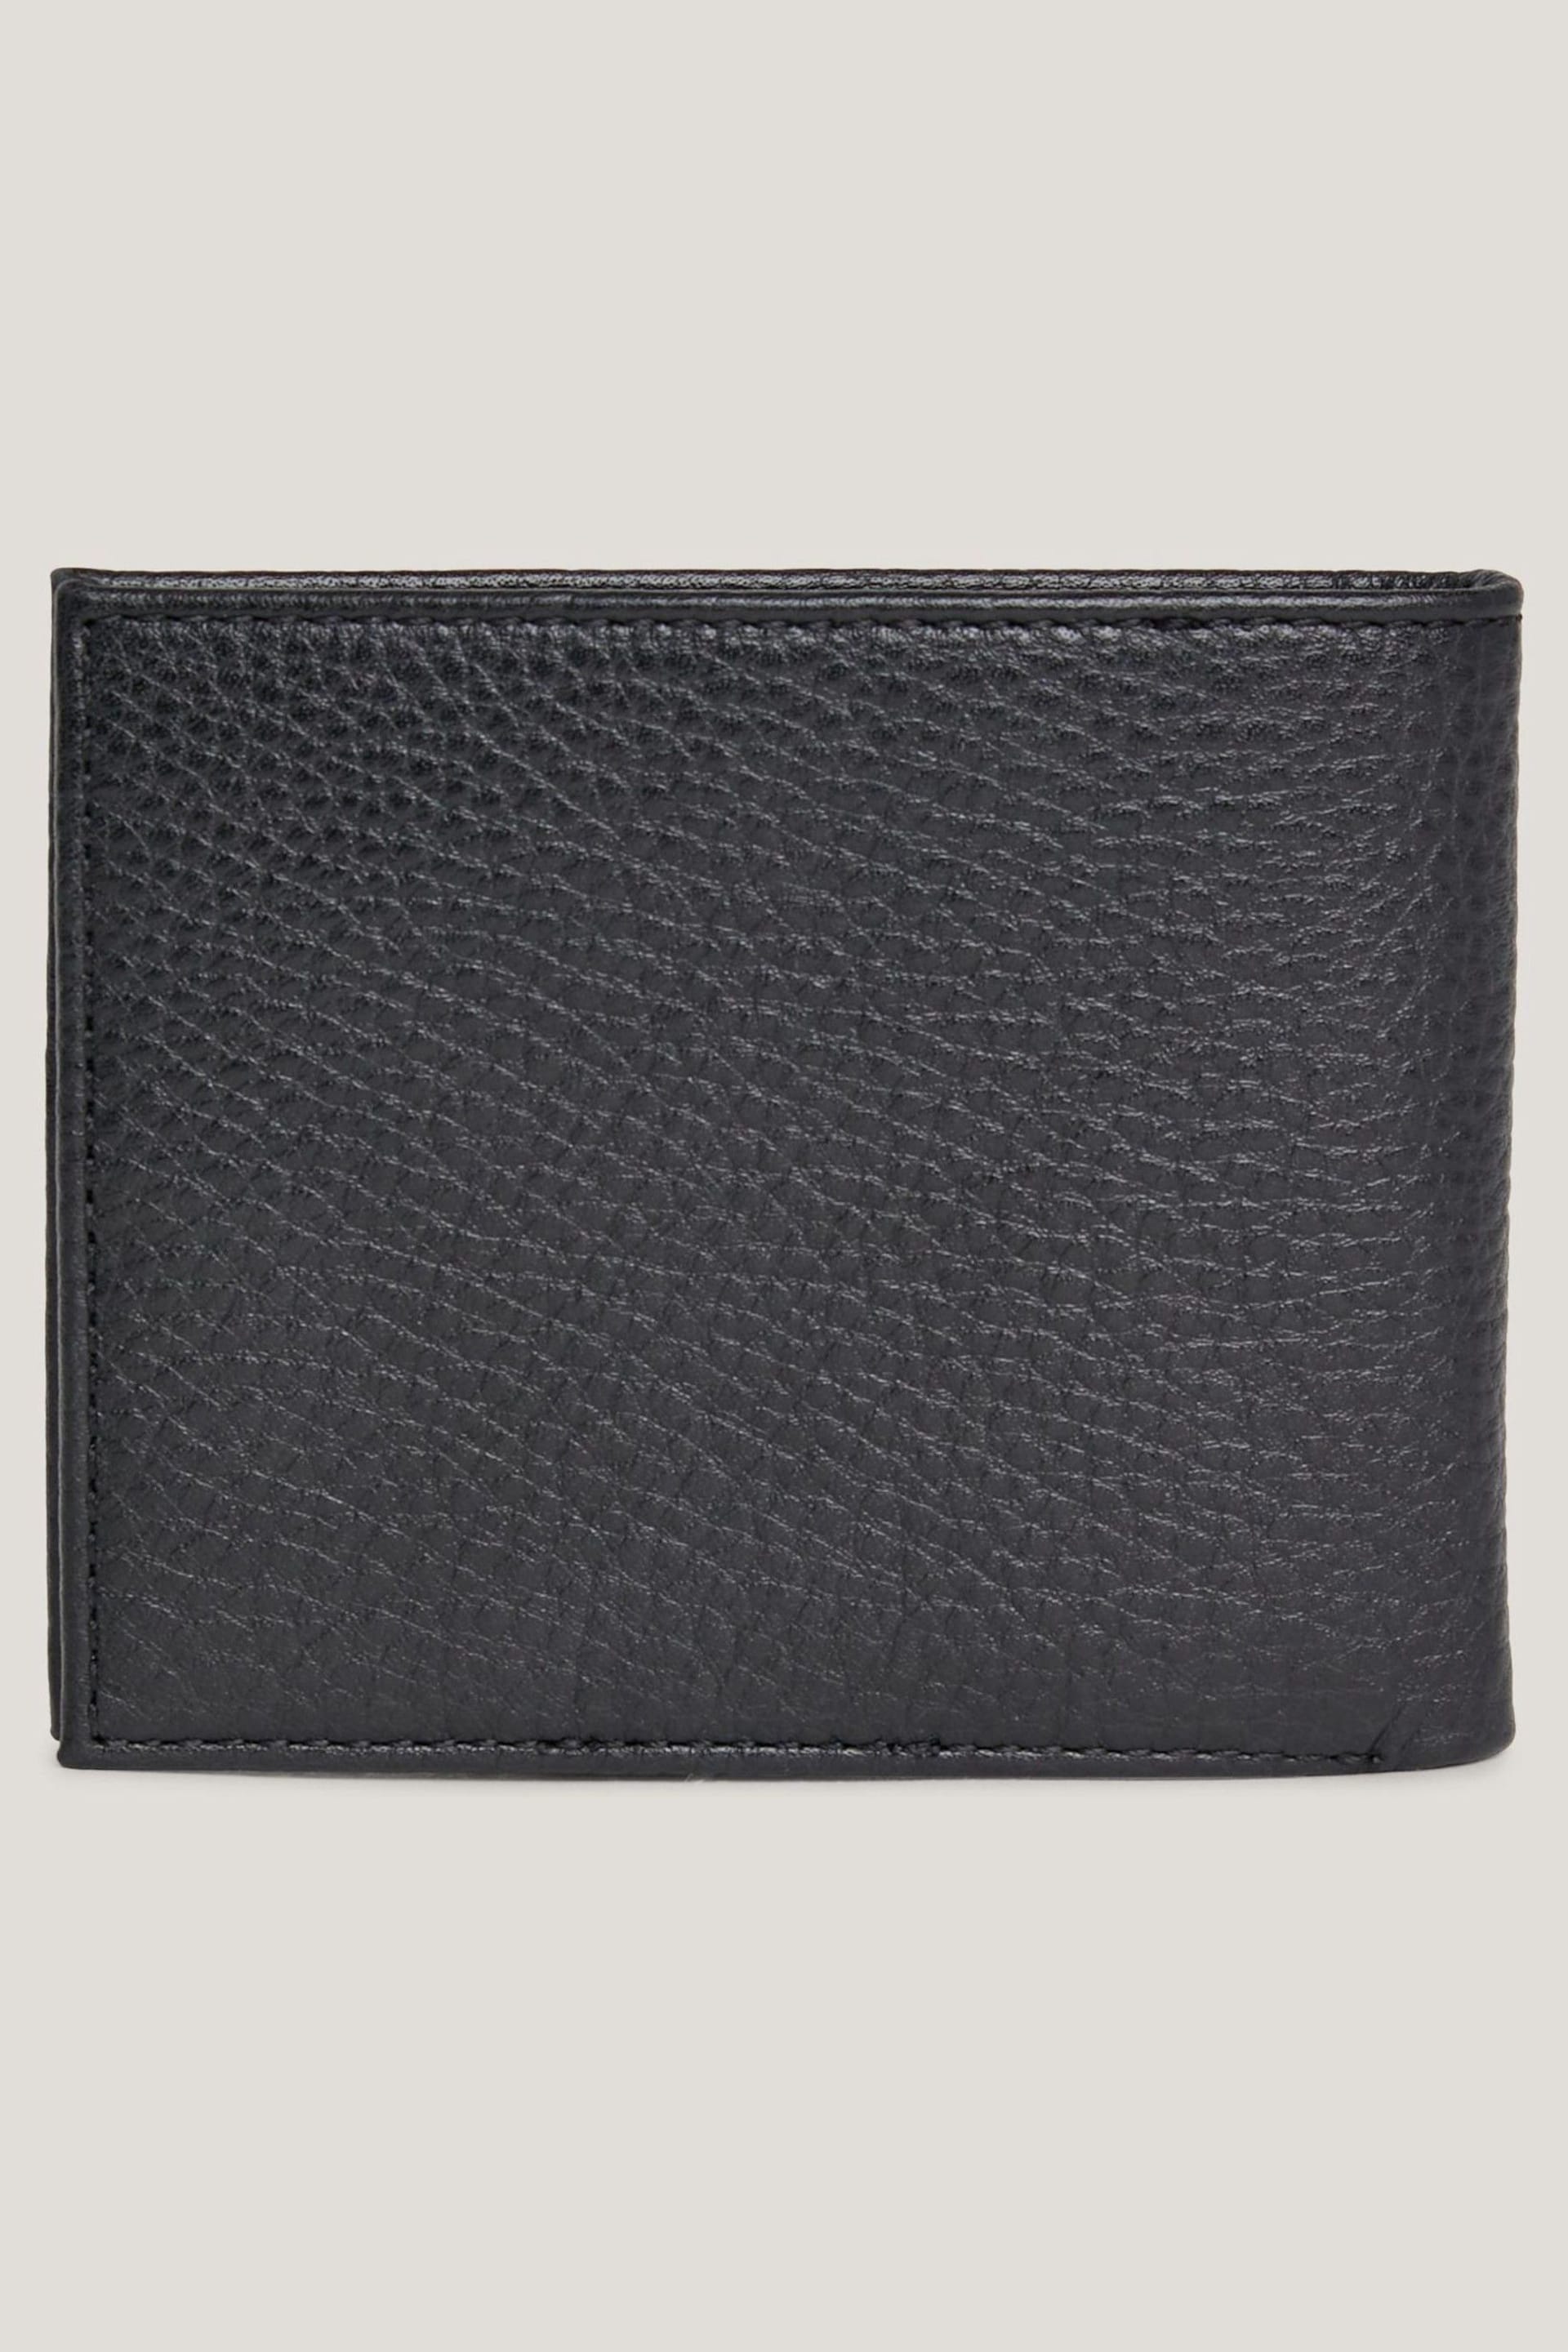 Tommy Hilfiger Central Black Mini Card Wallet - Image 2 of 3